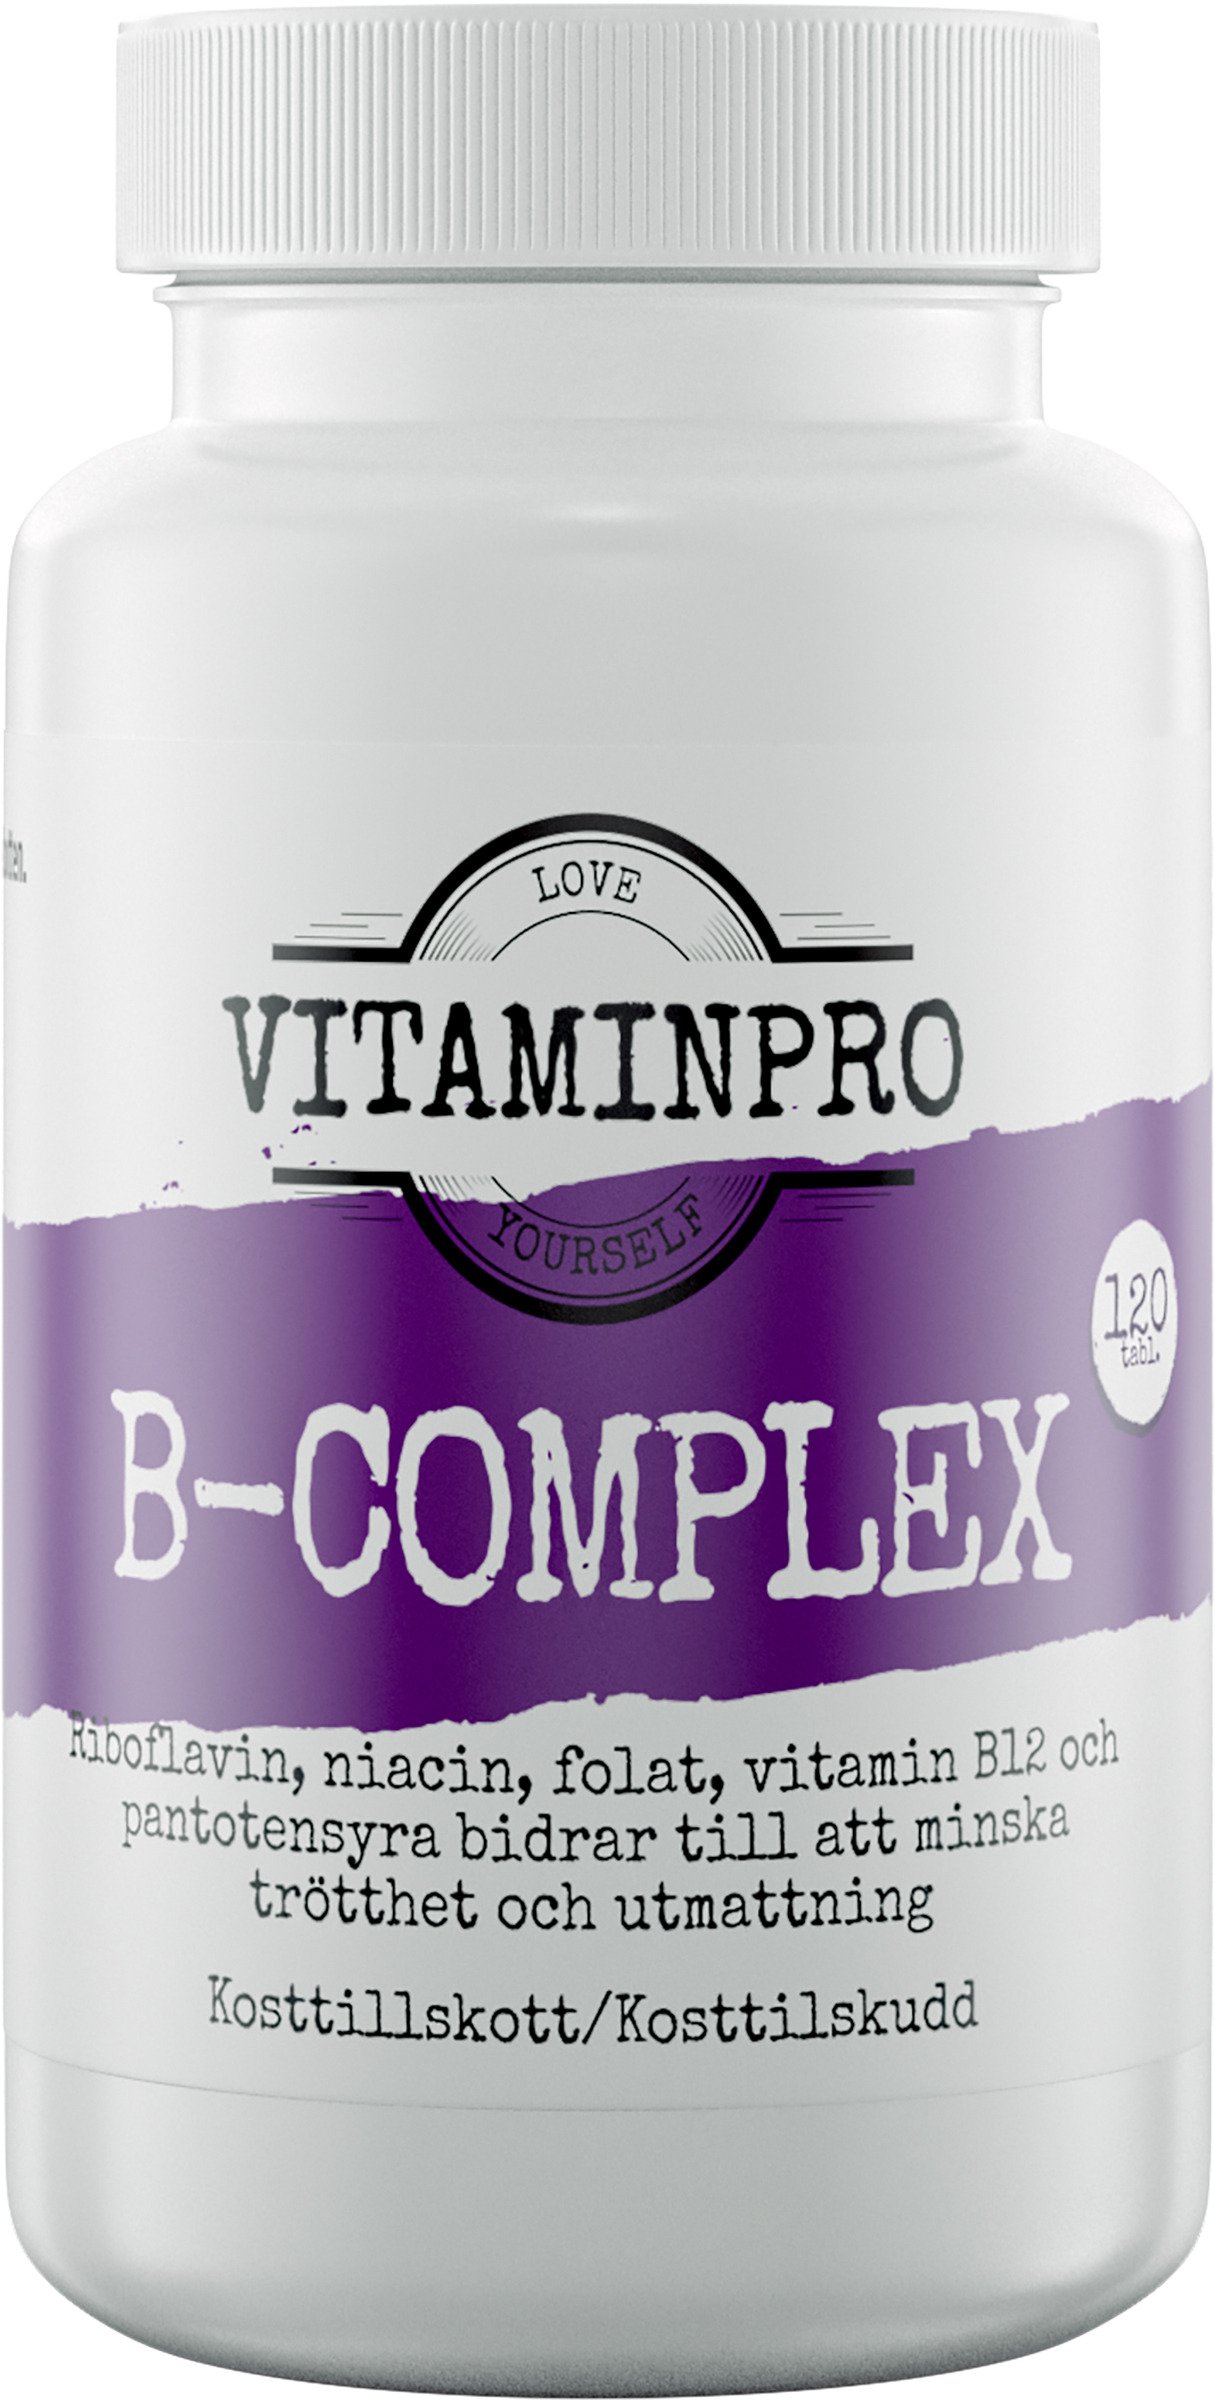 Vitaminpro B-Complex 120 tabletter